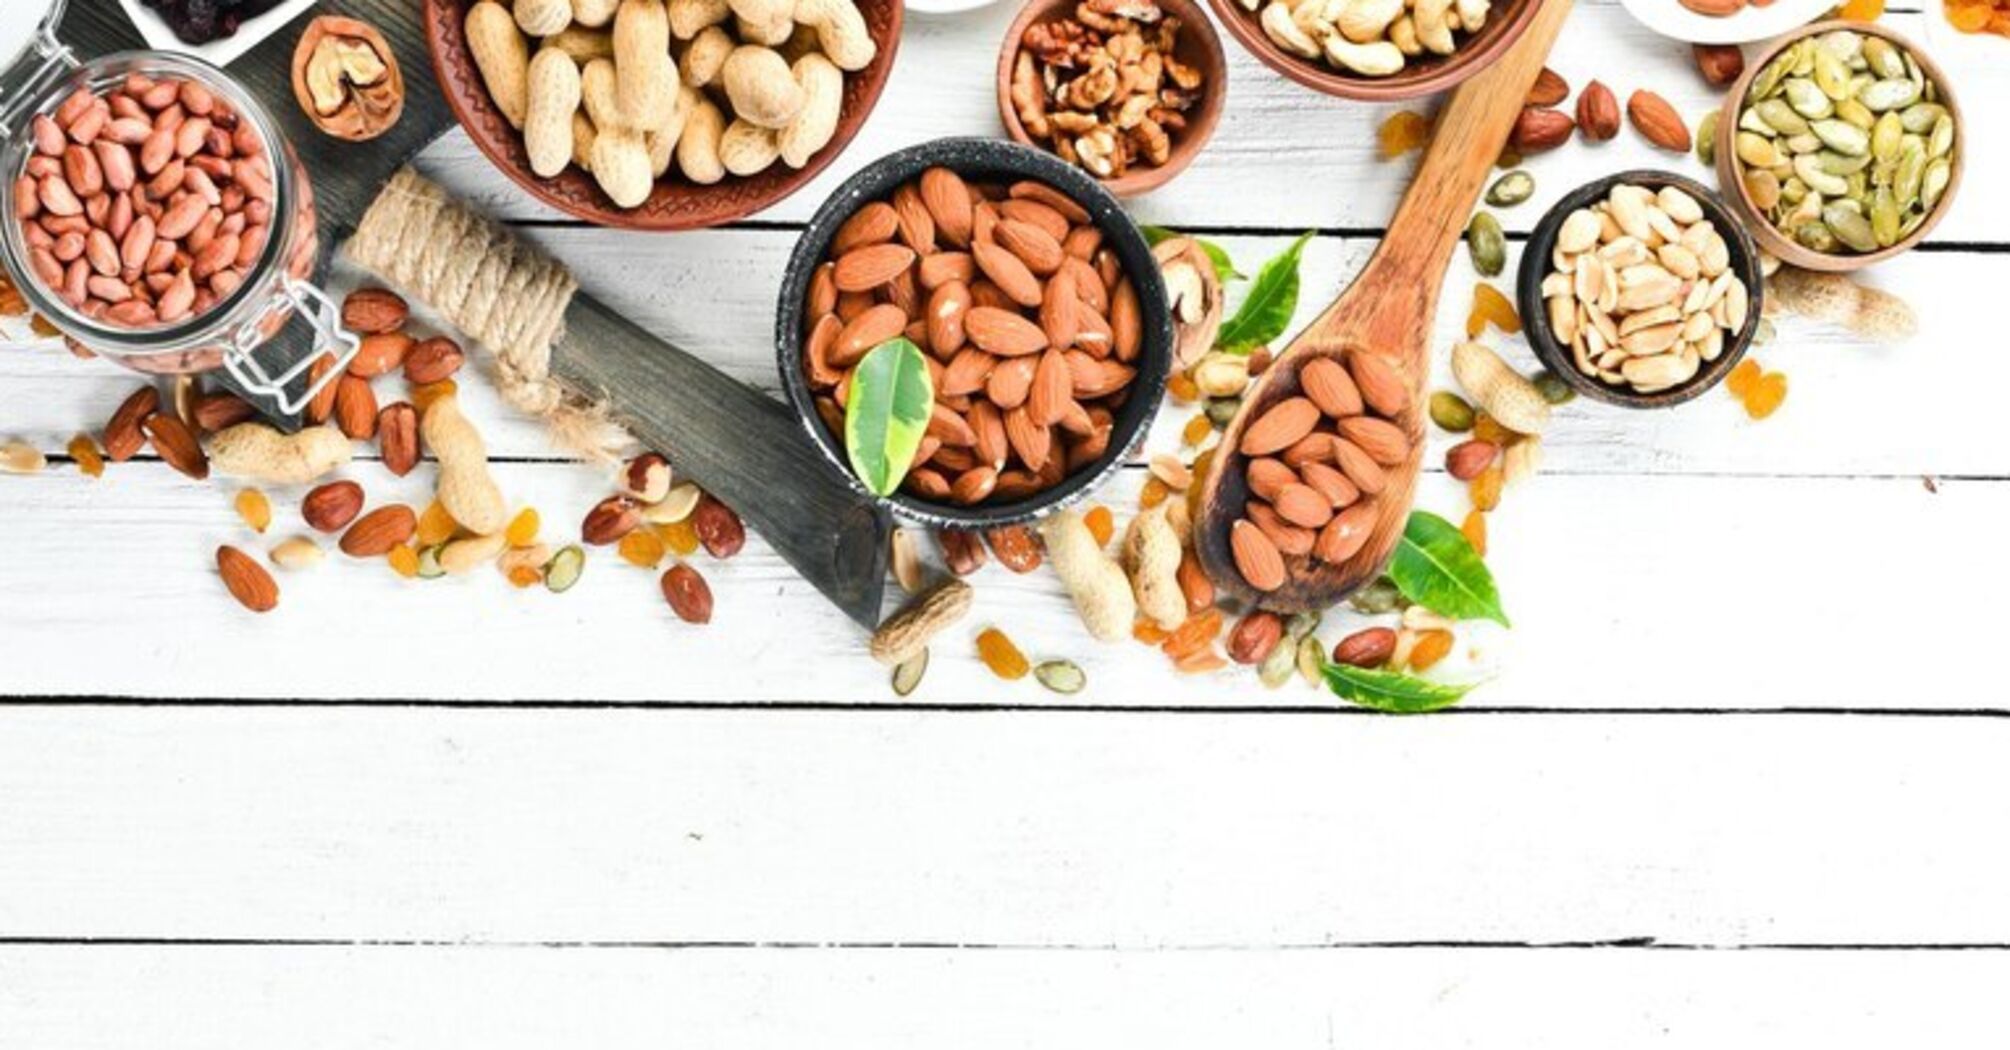  6 лучших видов орехов для похудения